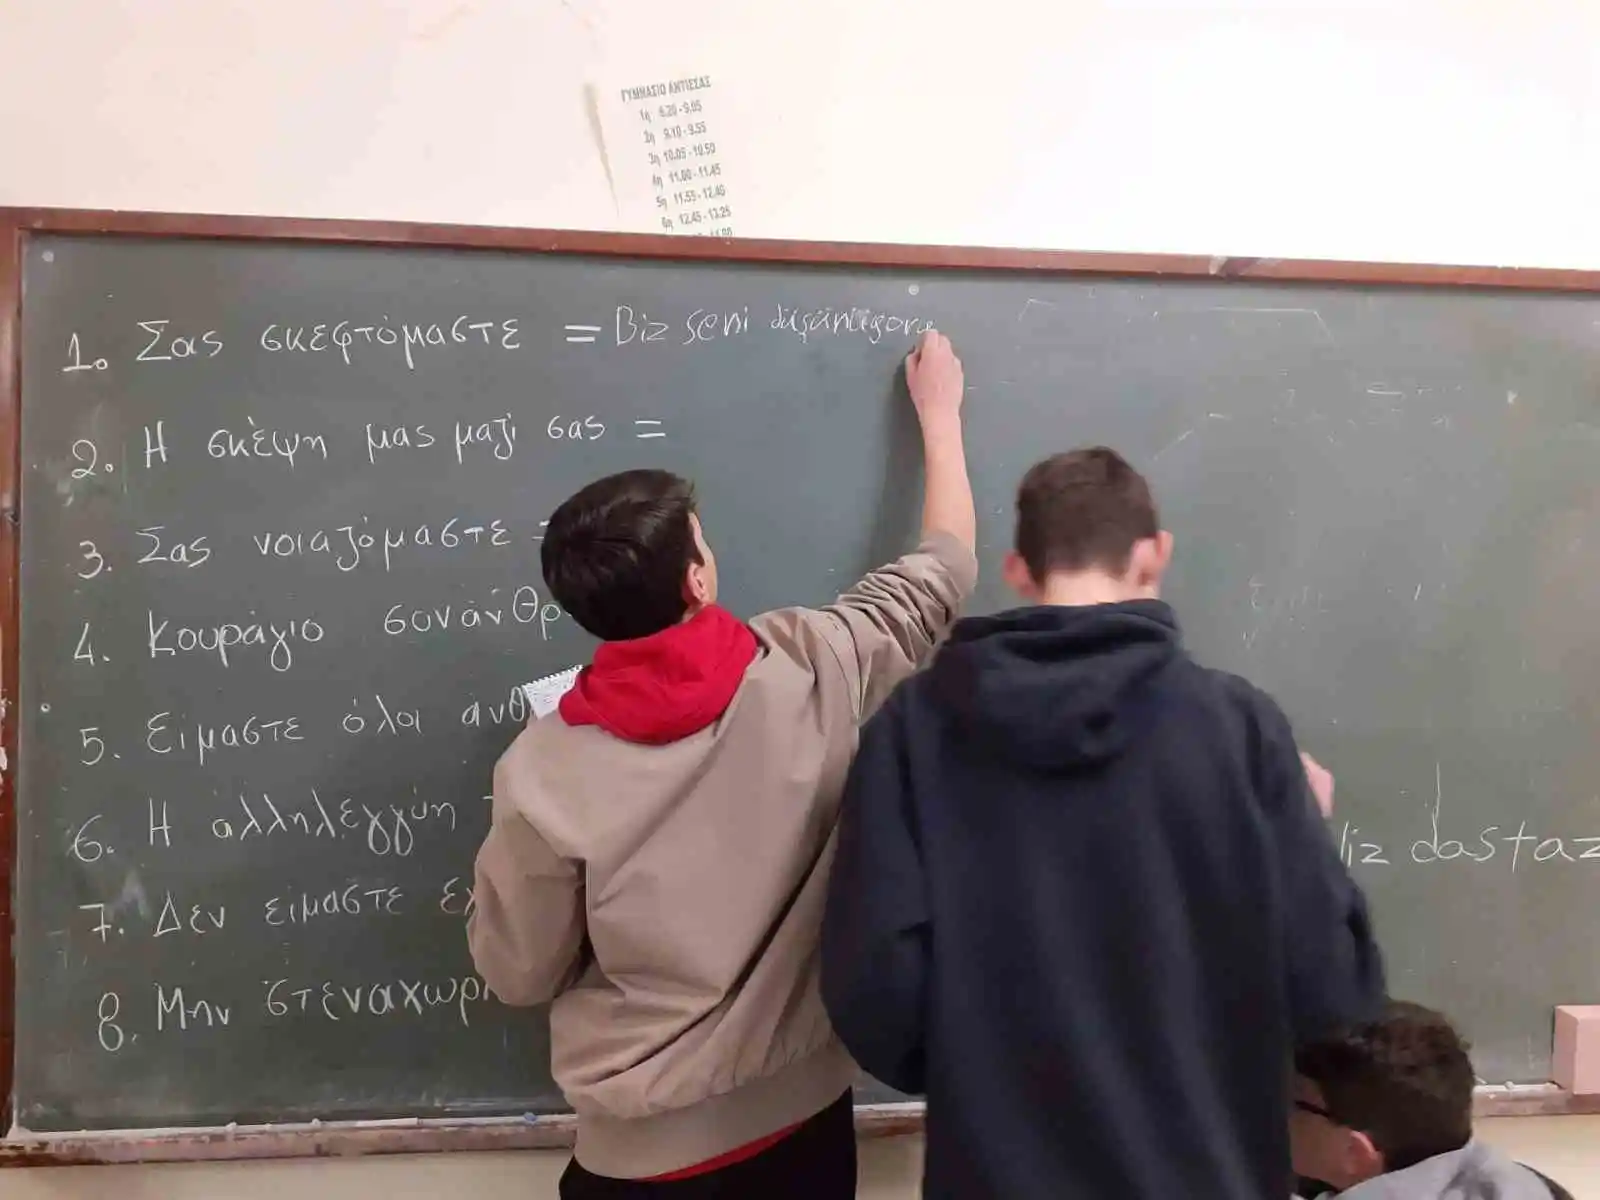 Yunan lise öğrencilerinden Türkiye'ye duygu dolu mesajlar: "Geçmiş olsun komşular"
